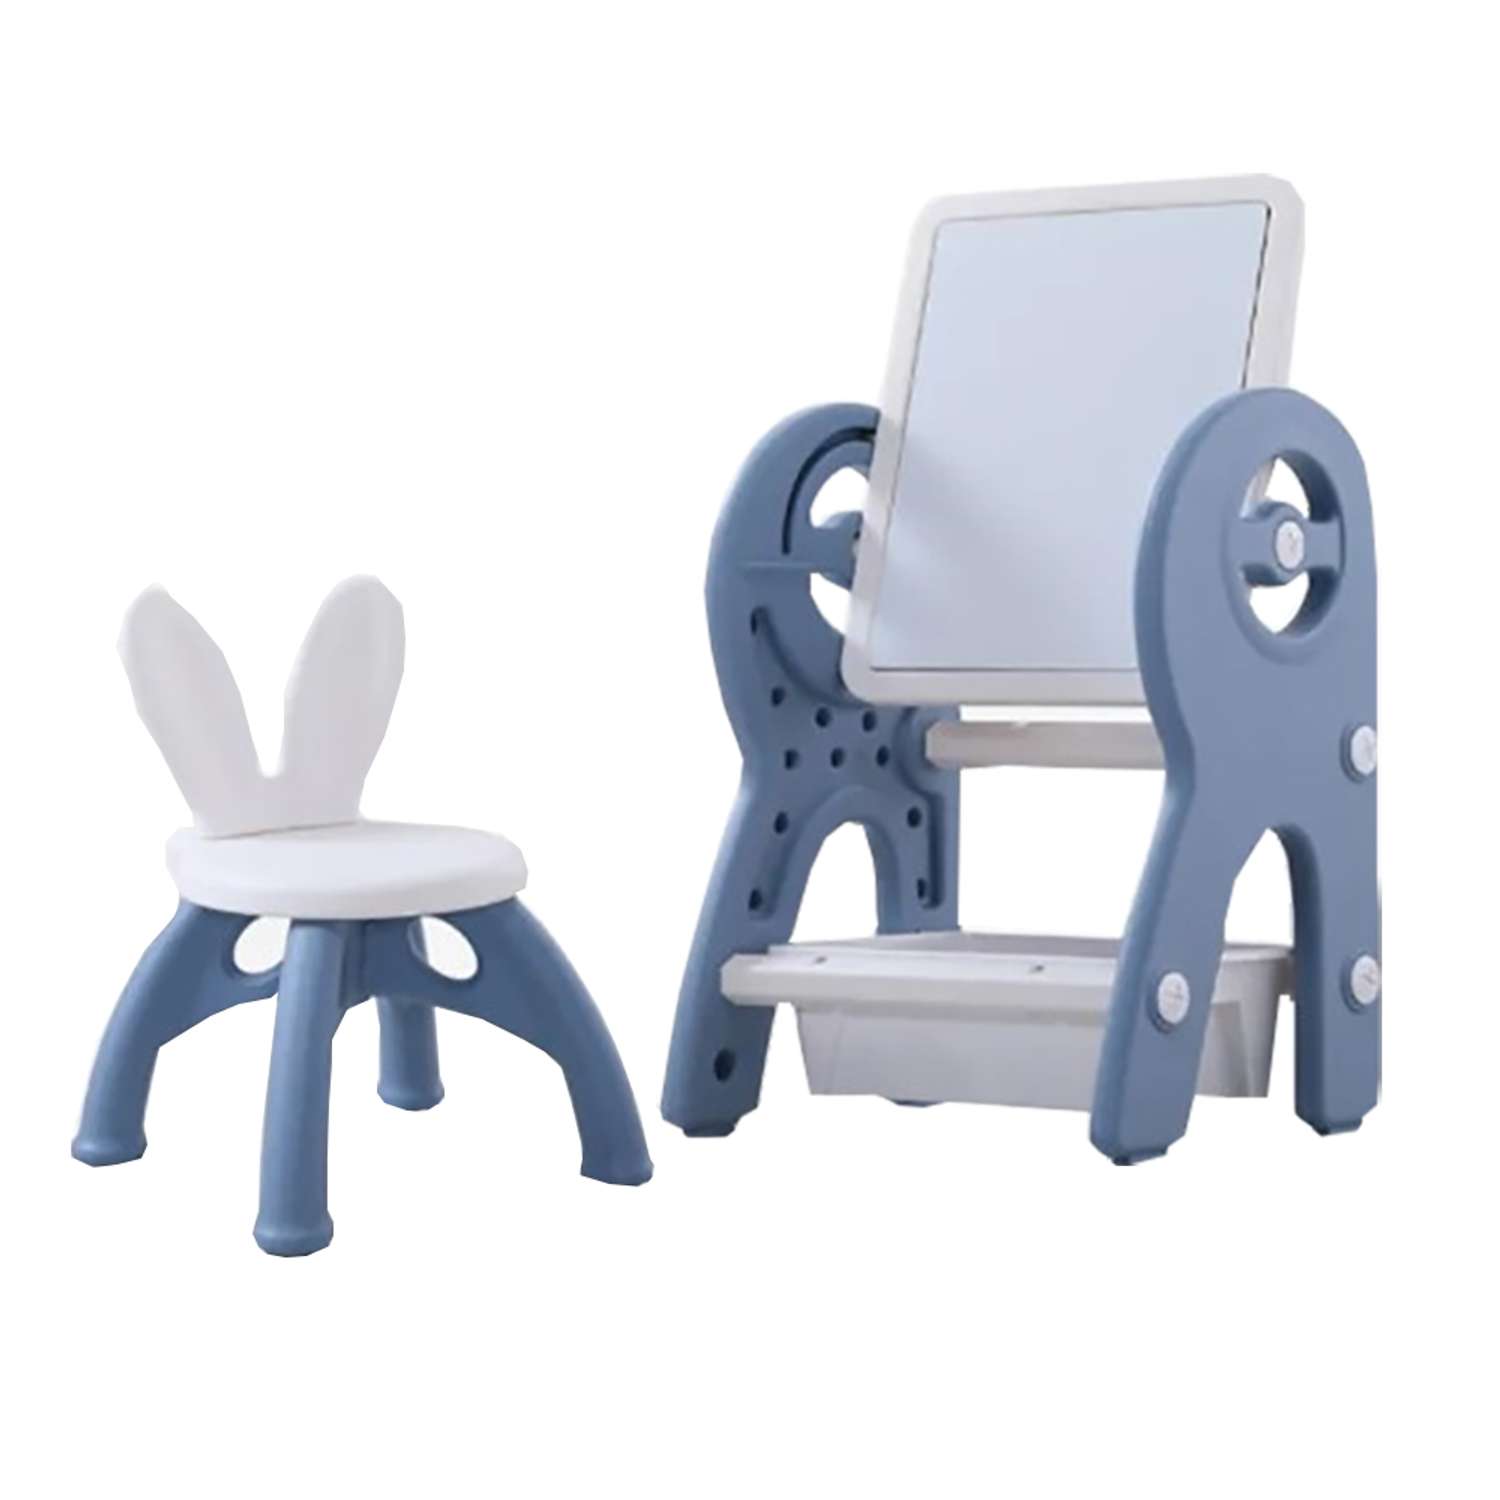 Набор для творчества Floopsi мольберт детский столик конструктор стульчик. Доска для рисования и конструирования. Синий - фото 1